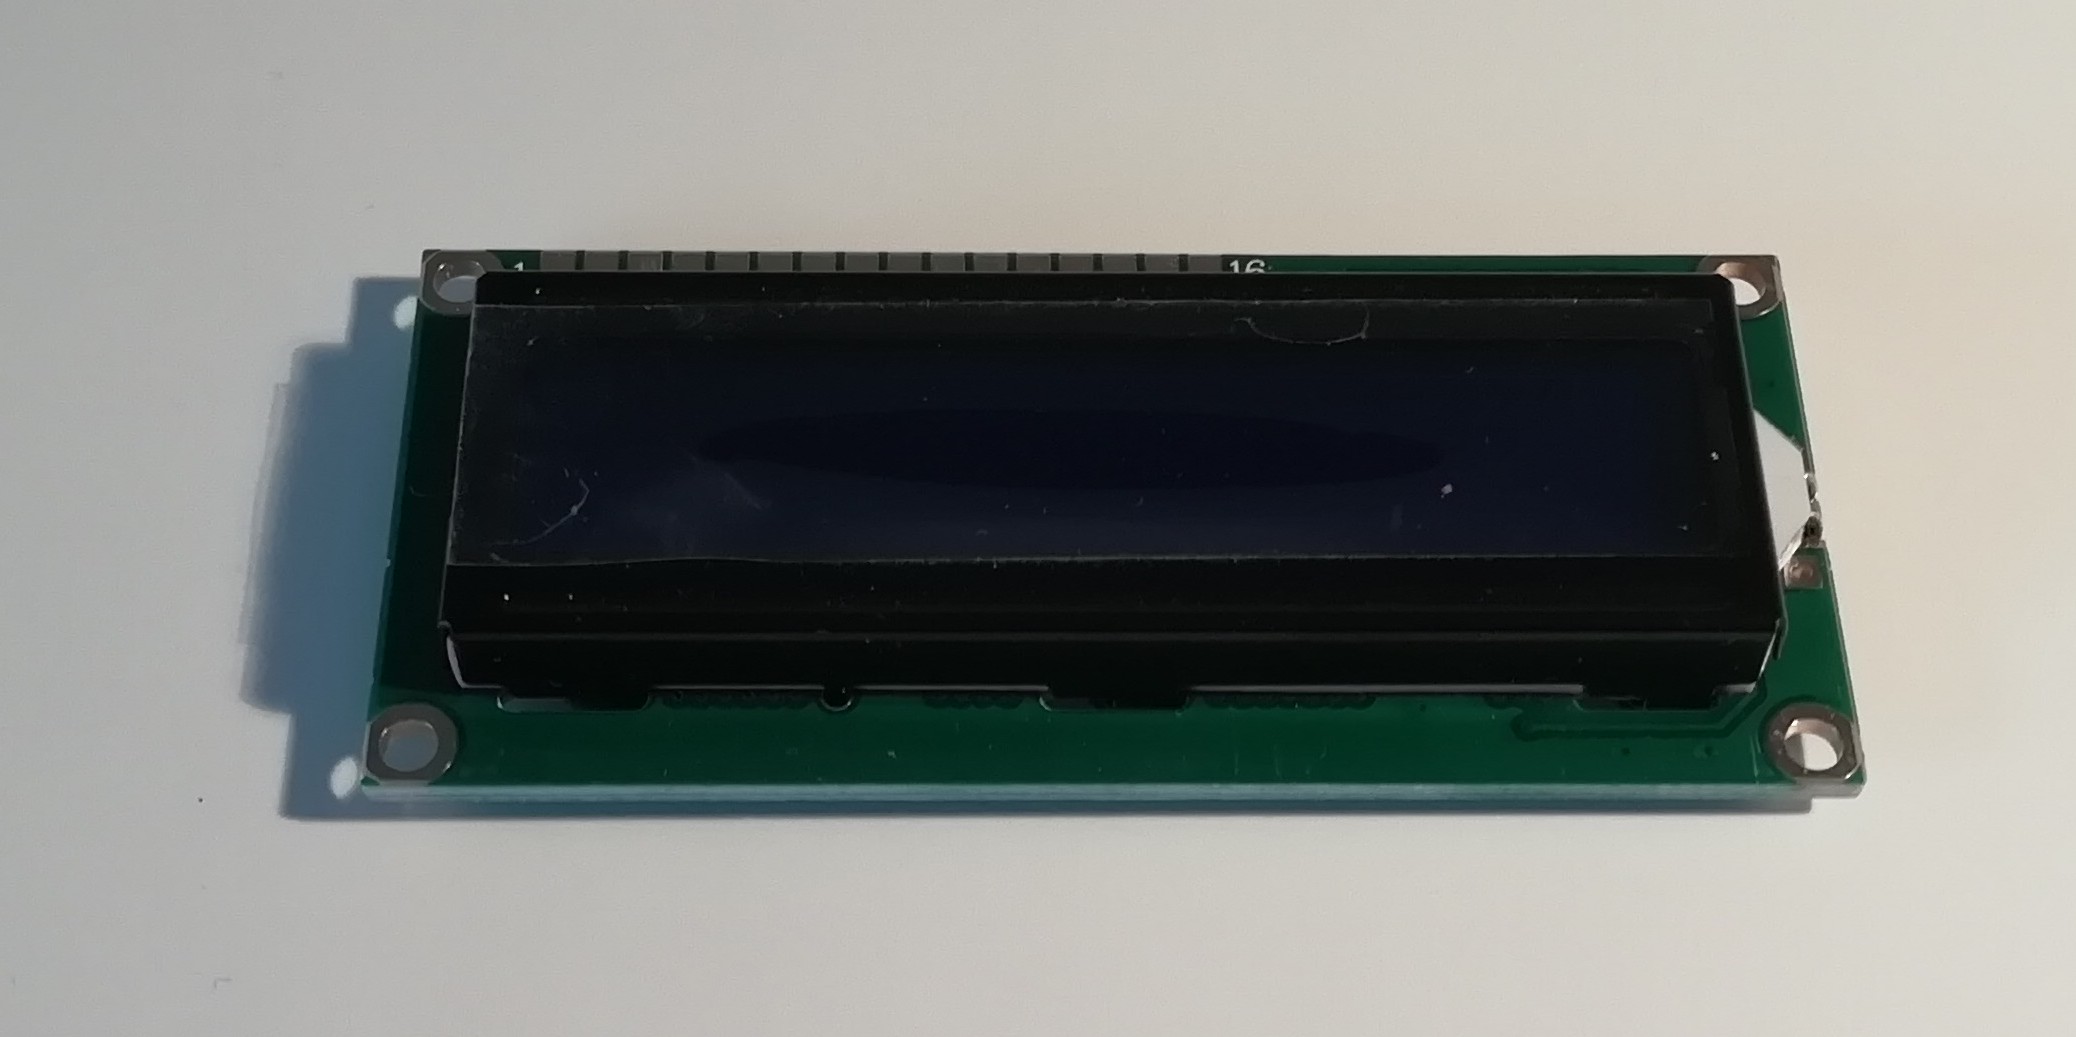 Obr. 9. Dvouřádkový LCD displej jako periferie např. do prostředí Arduina